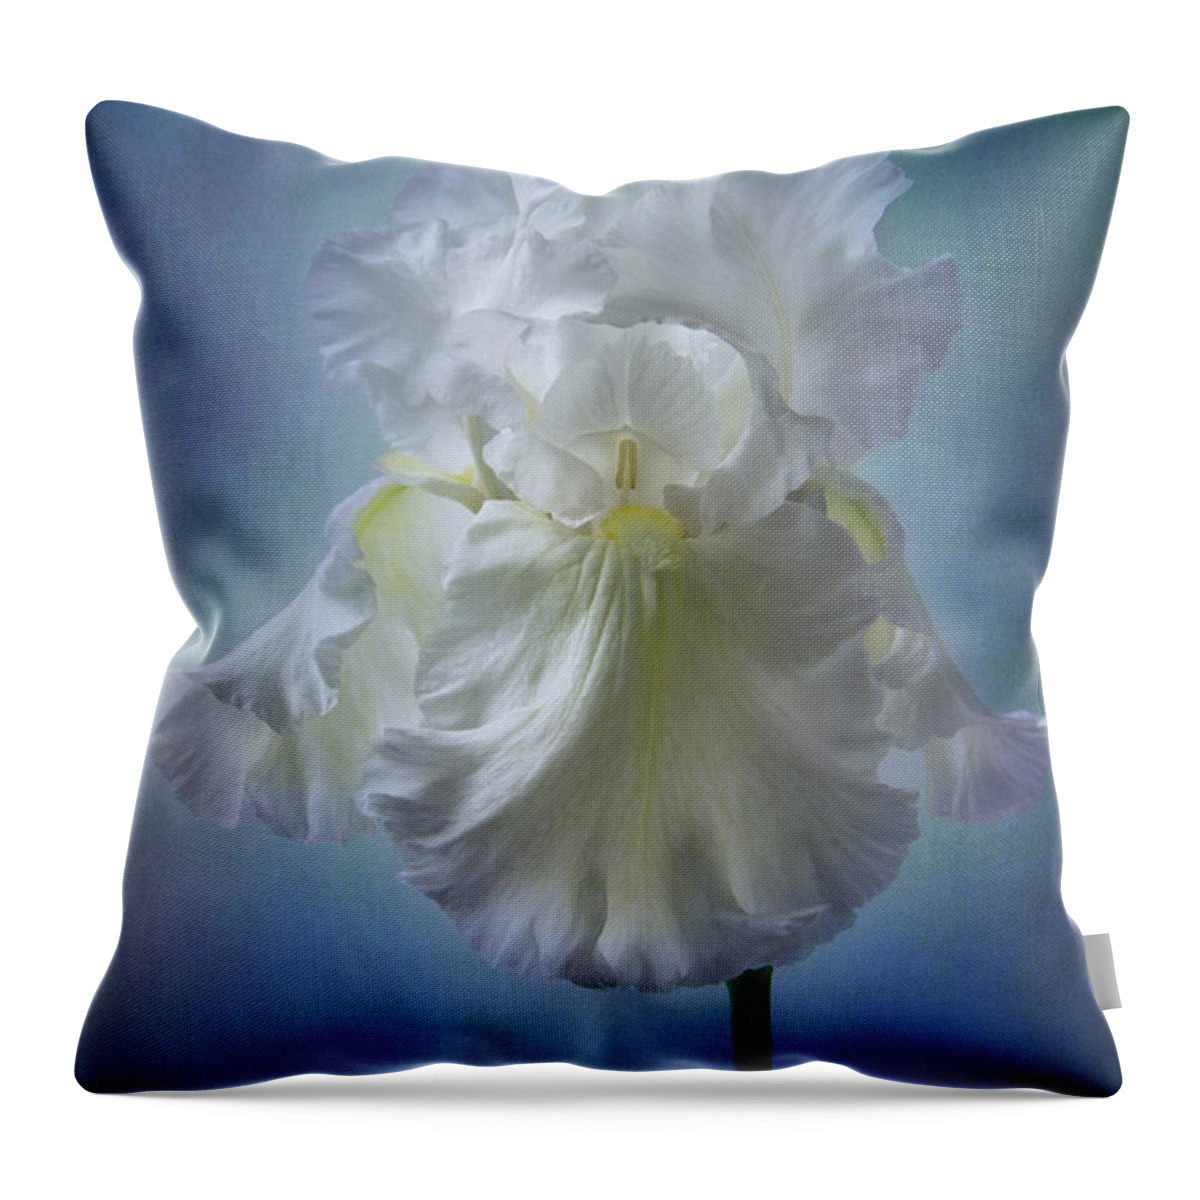 White Iris Throw Pillow featuring the photograph White Bianca by Marina Kojukhova